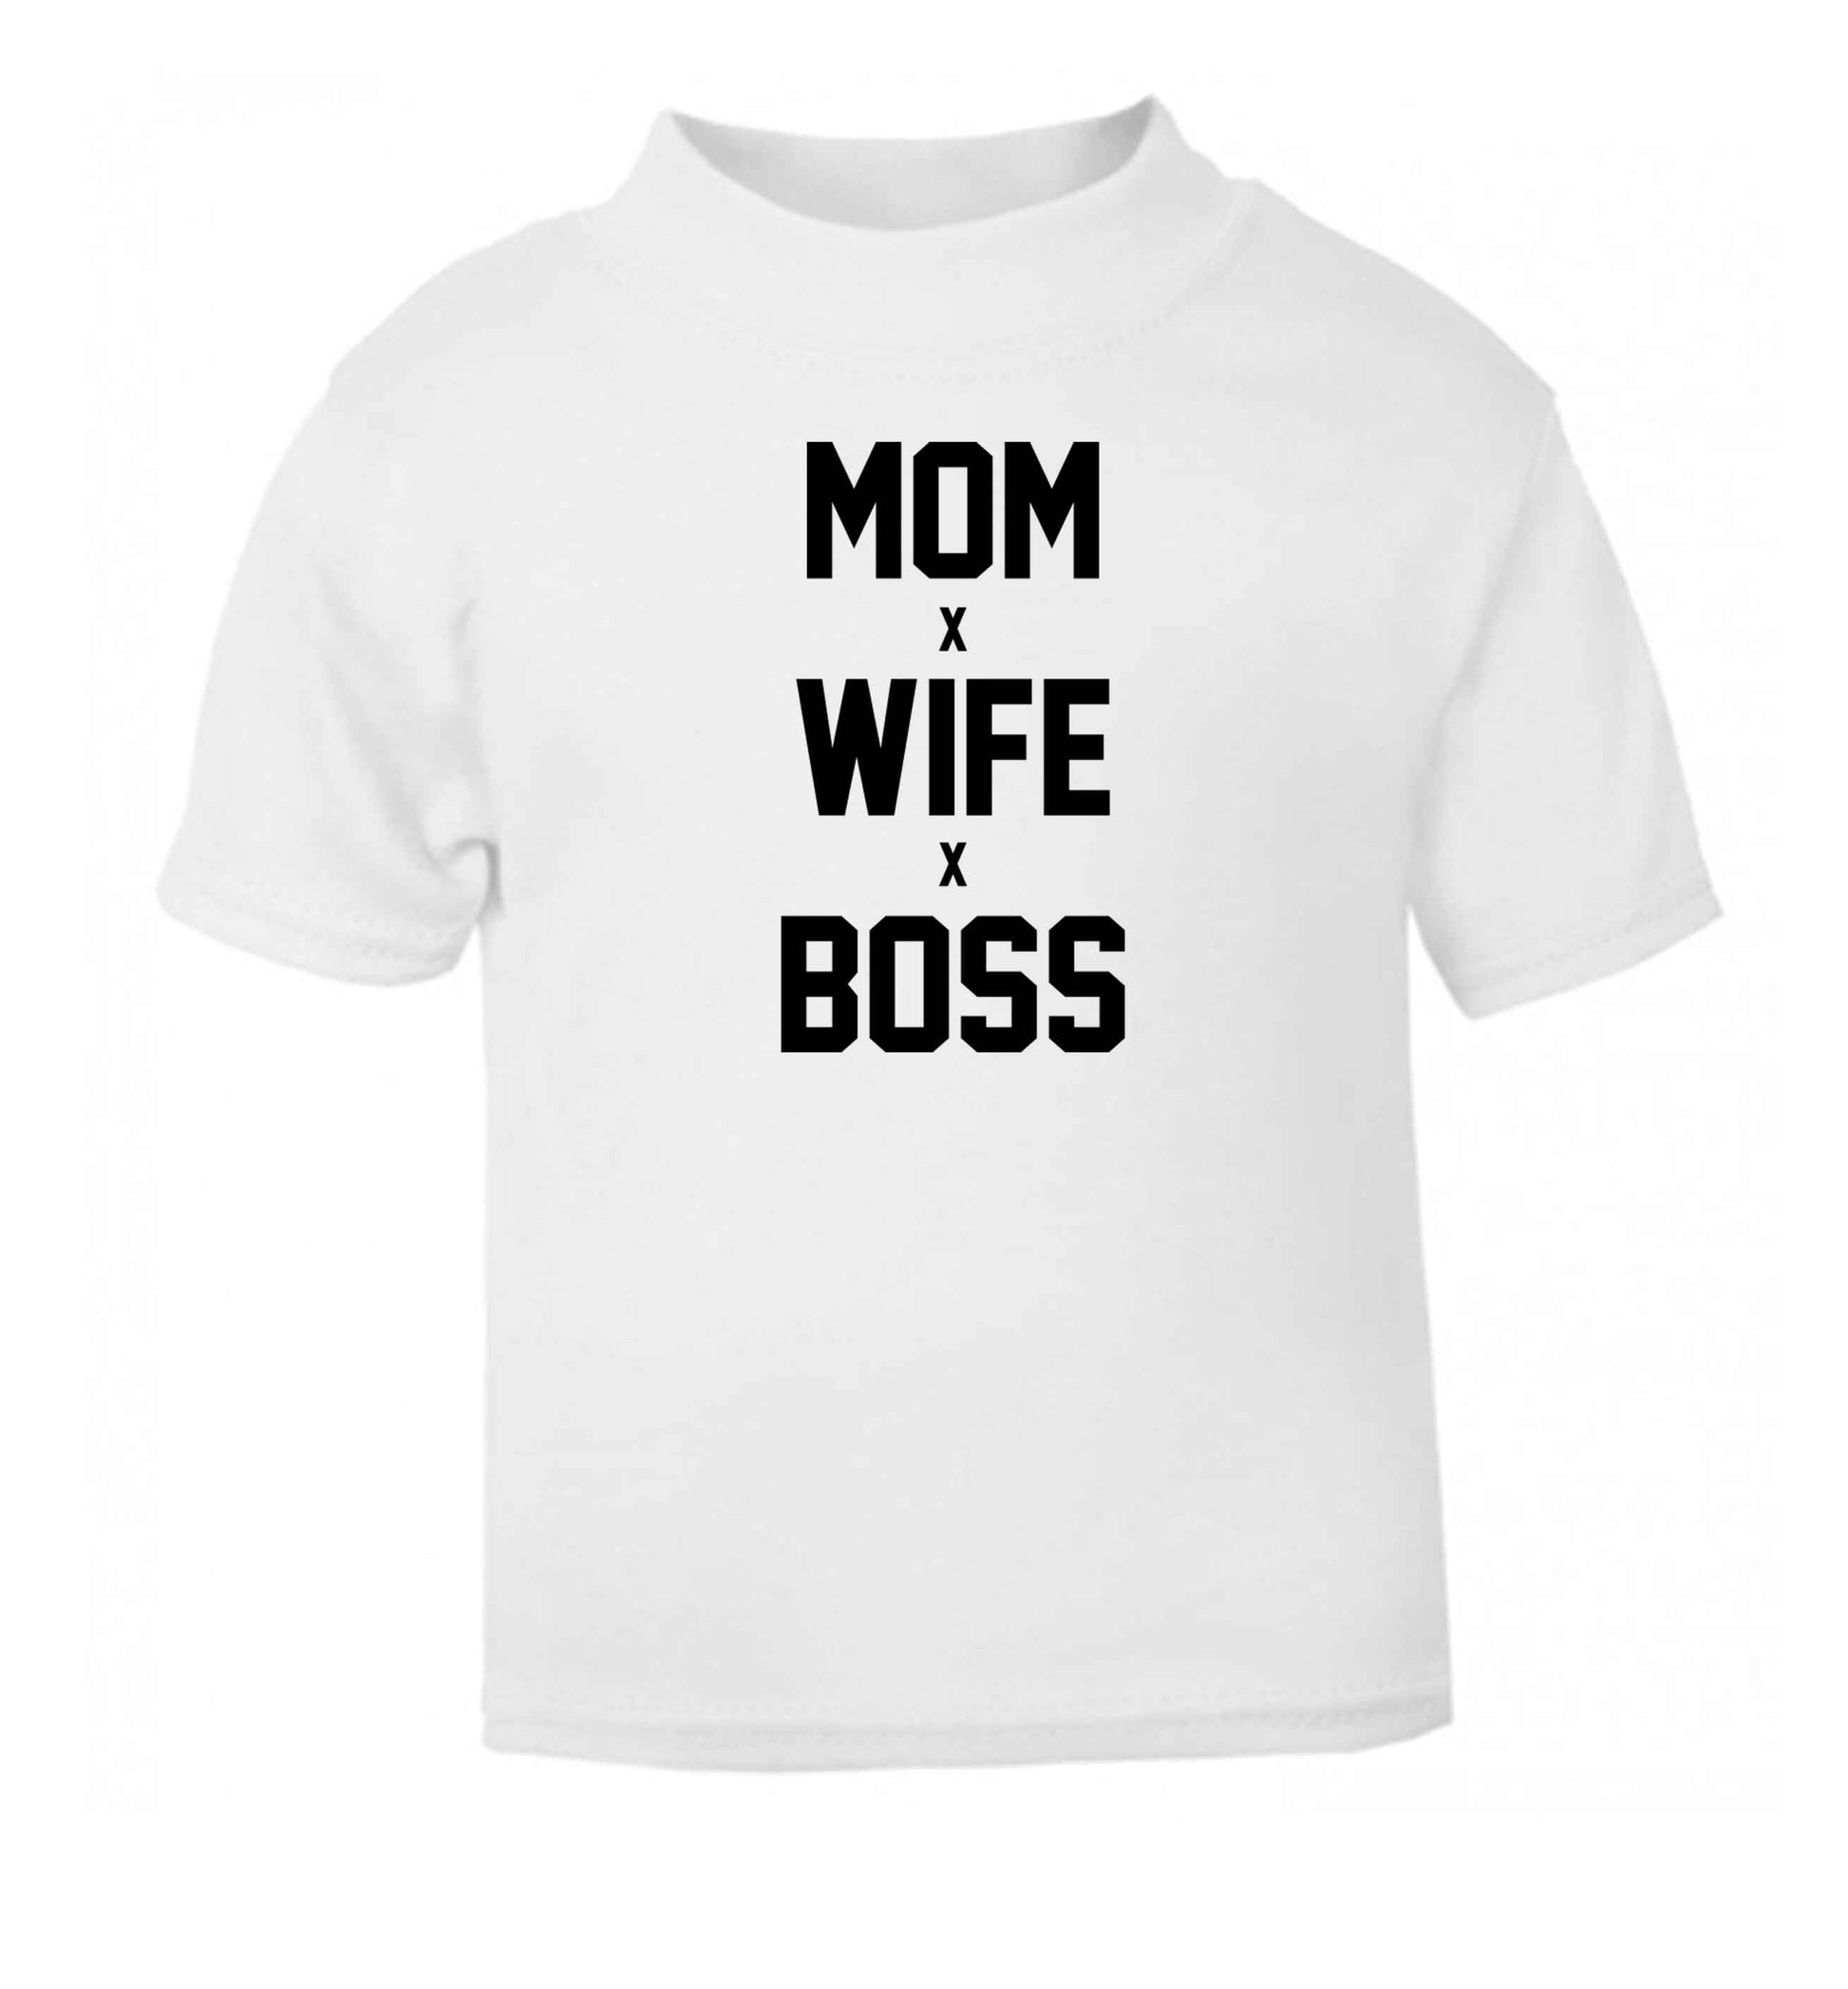 Mum wife boss white baby toddler Tshirt 2 Years